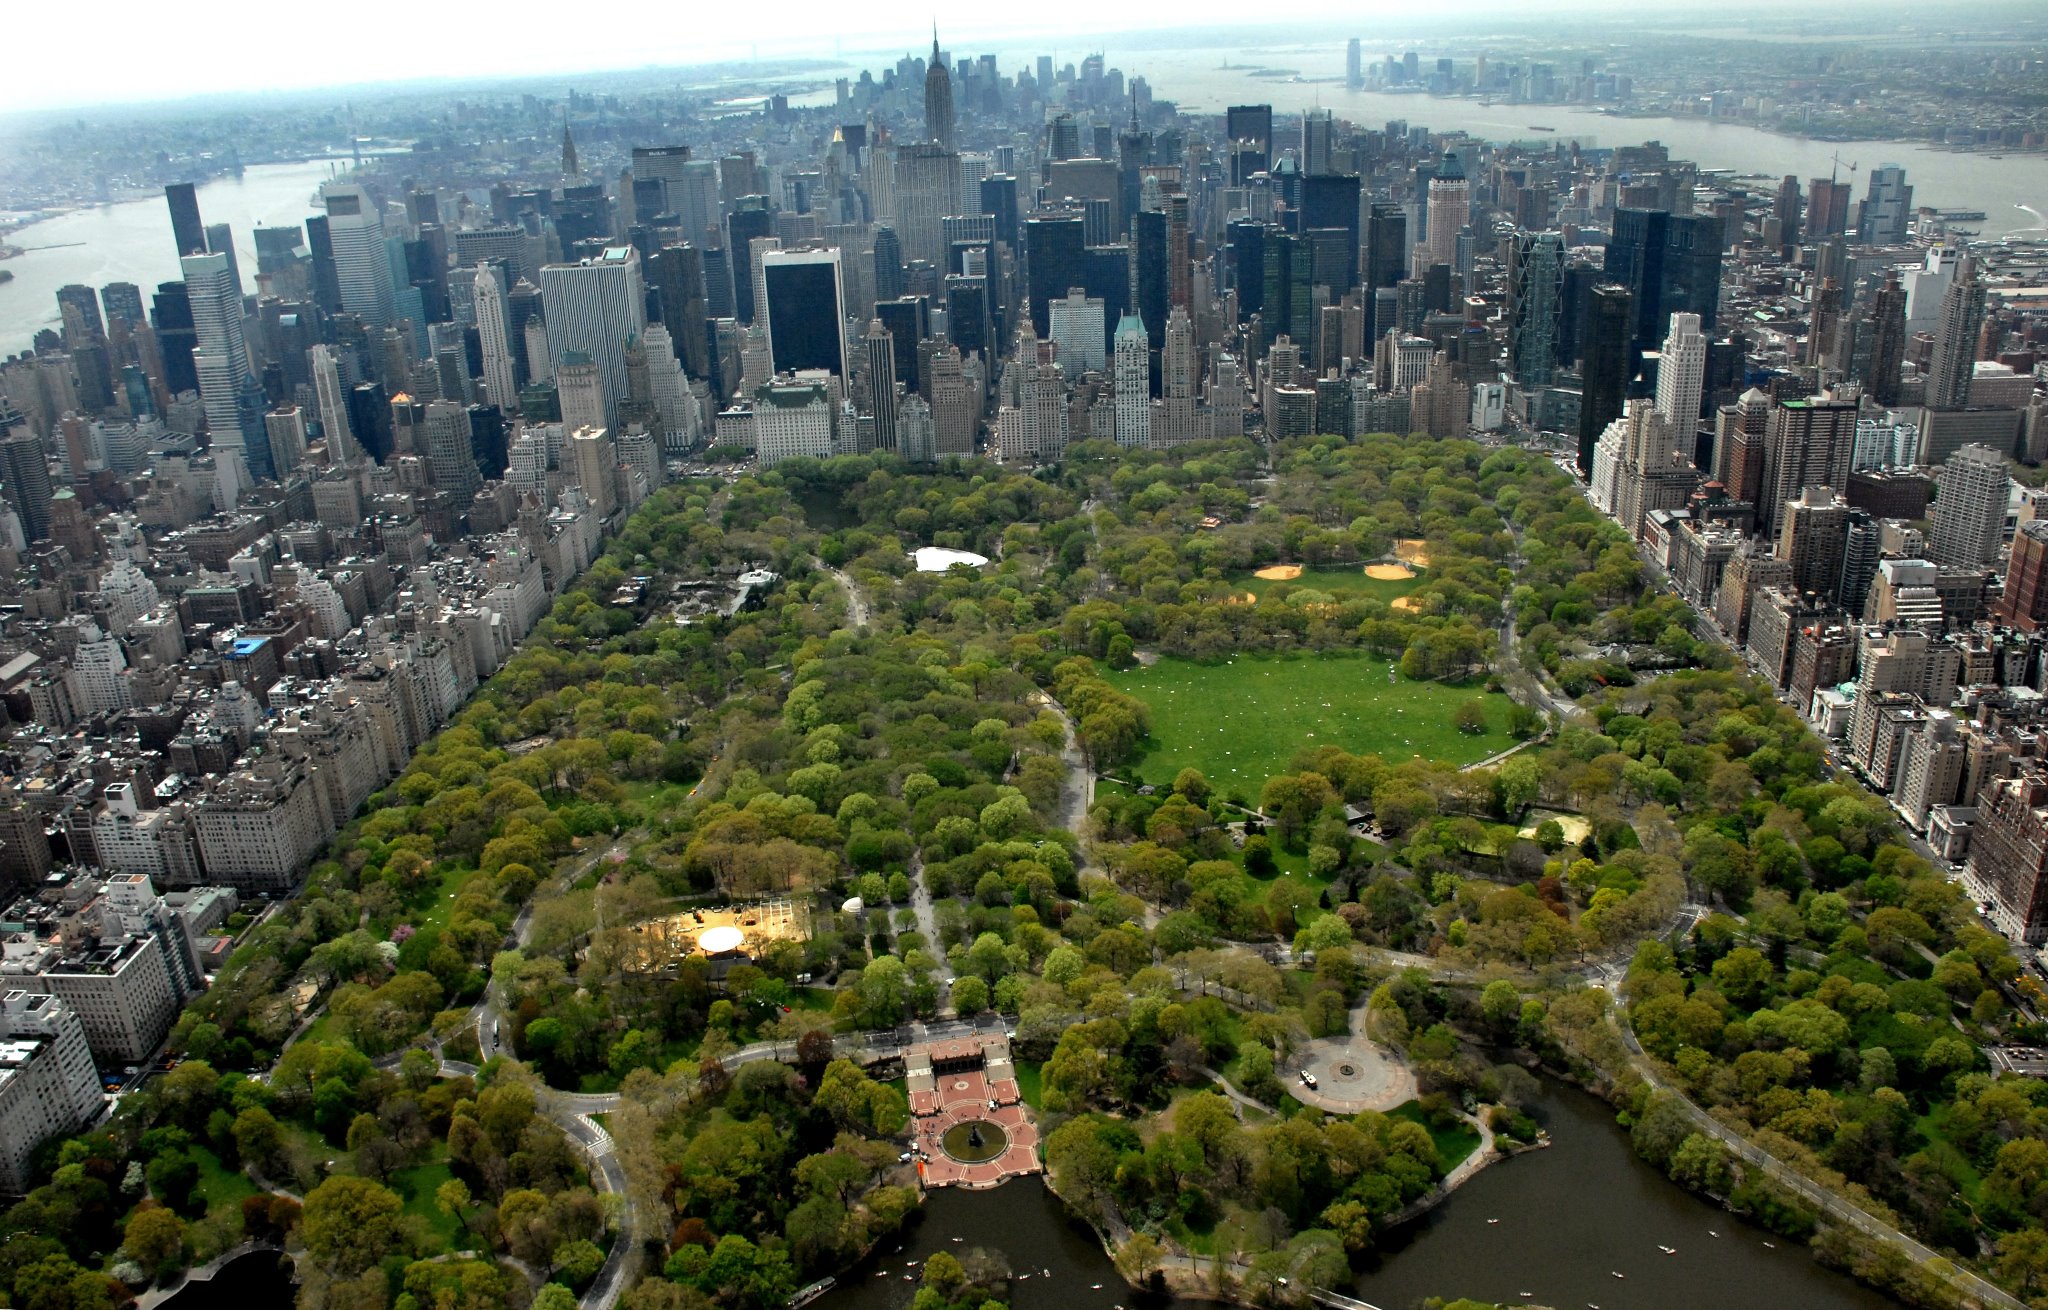 Парки в америке в городе. Централ парк Нью-Йорк. Центральный парк Нью-Йорка вид сверху. Централ парк Нью-Йорк сверху. Централ парк Нью-Йорк вид сверху.